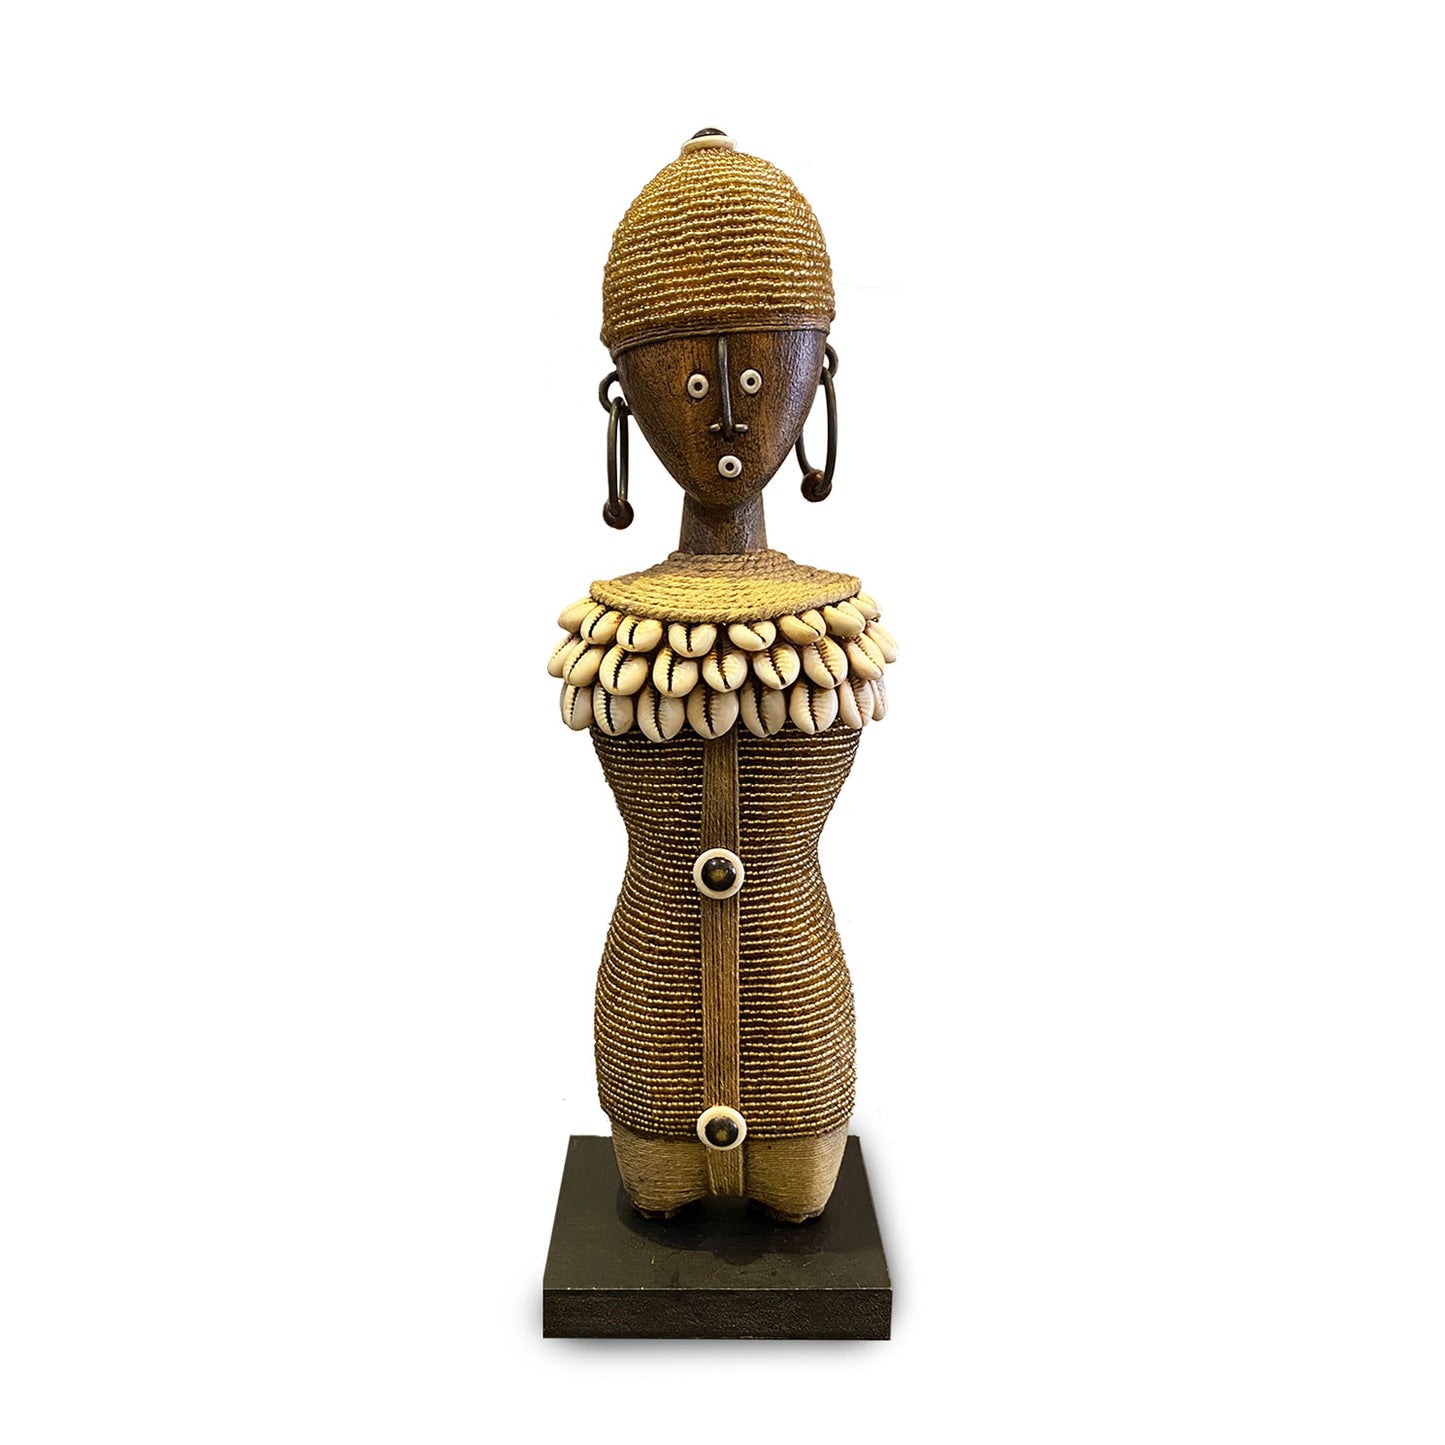 Namji doll oro realizzata a mano. Idea regalo unica per appassionati artigianato sudafricano